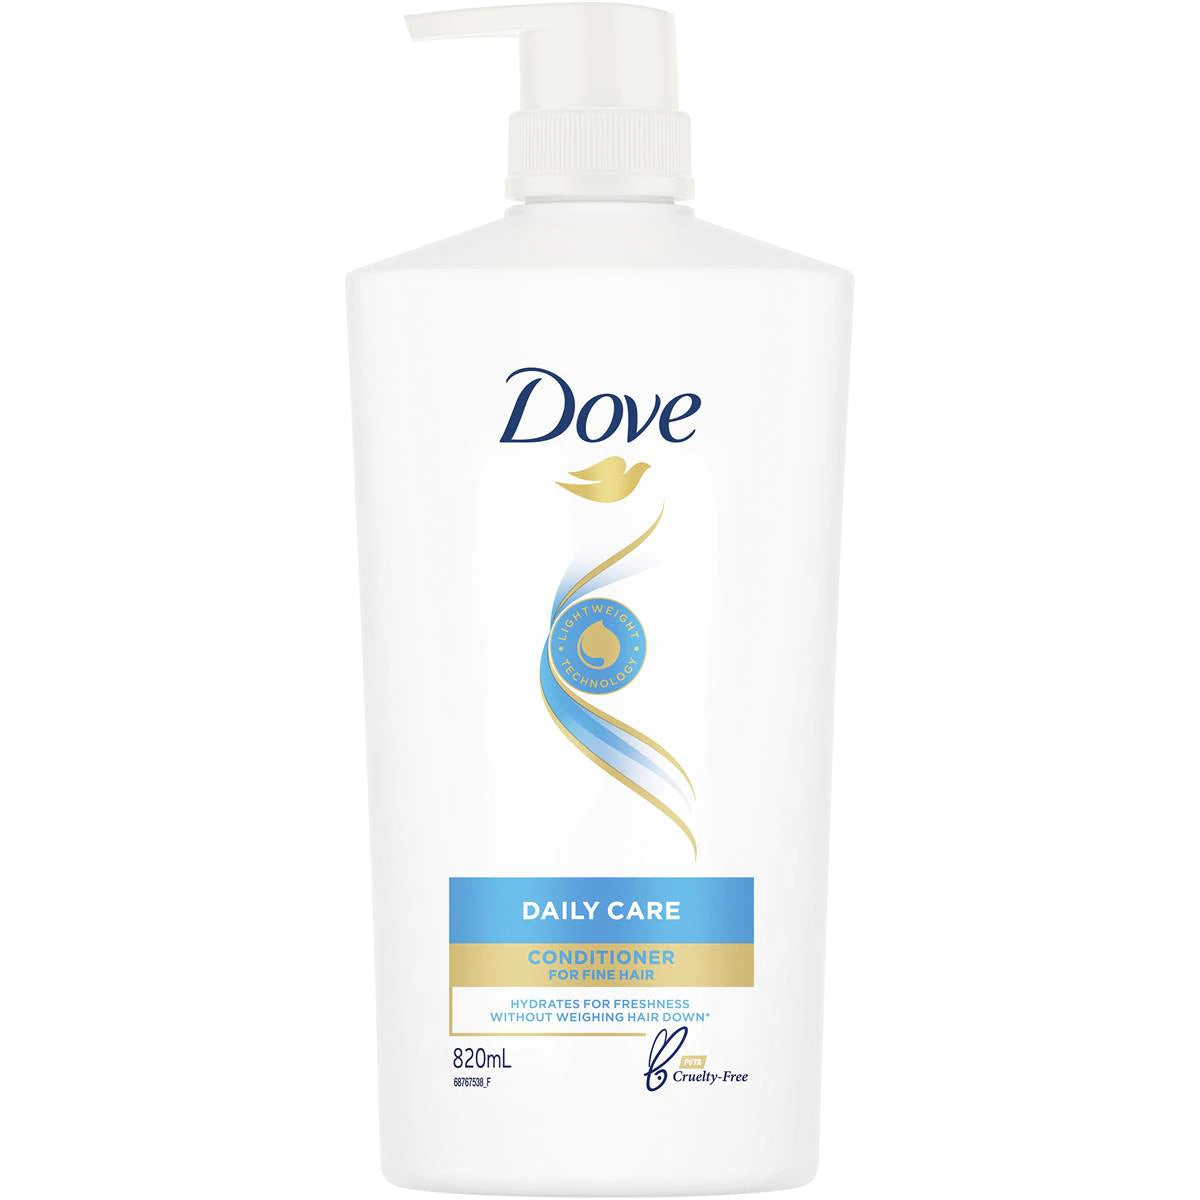 Dove Daily Care Conditioner 820ml